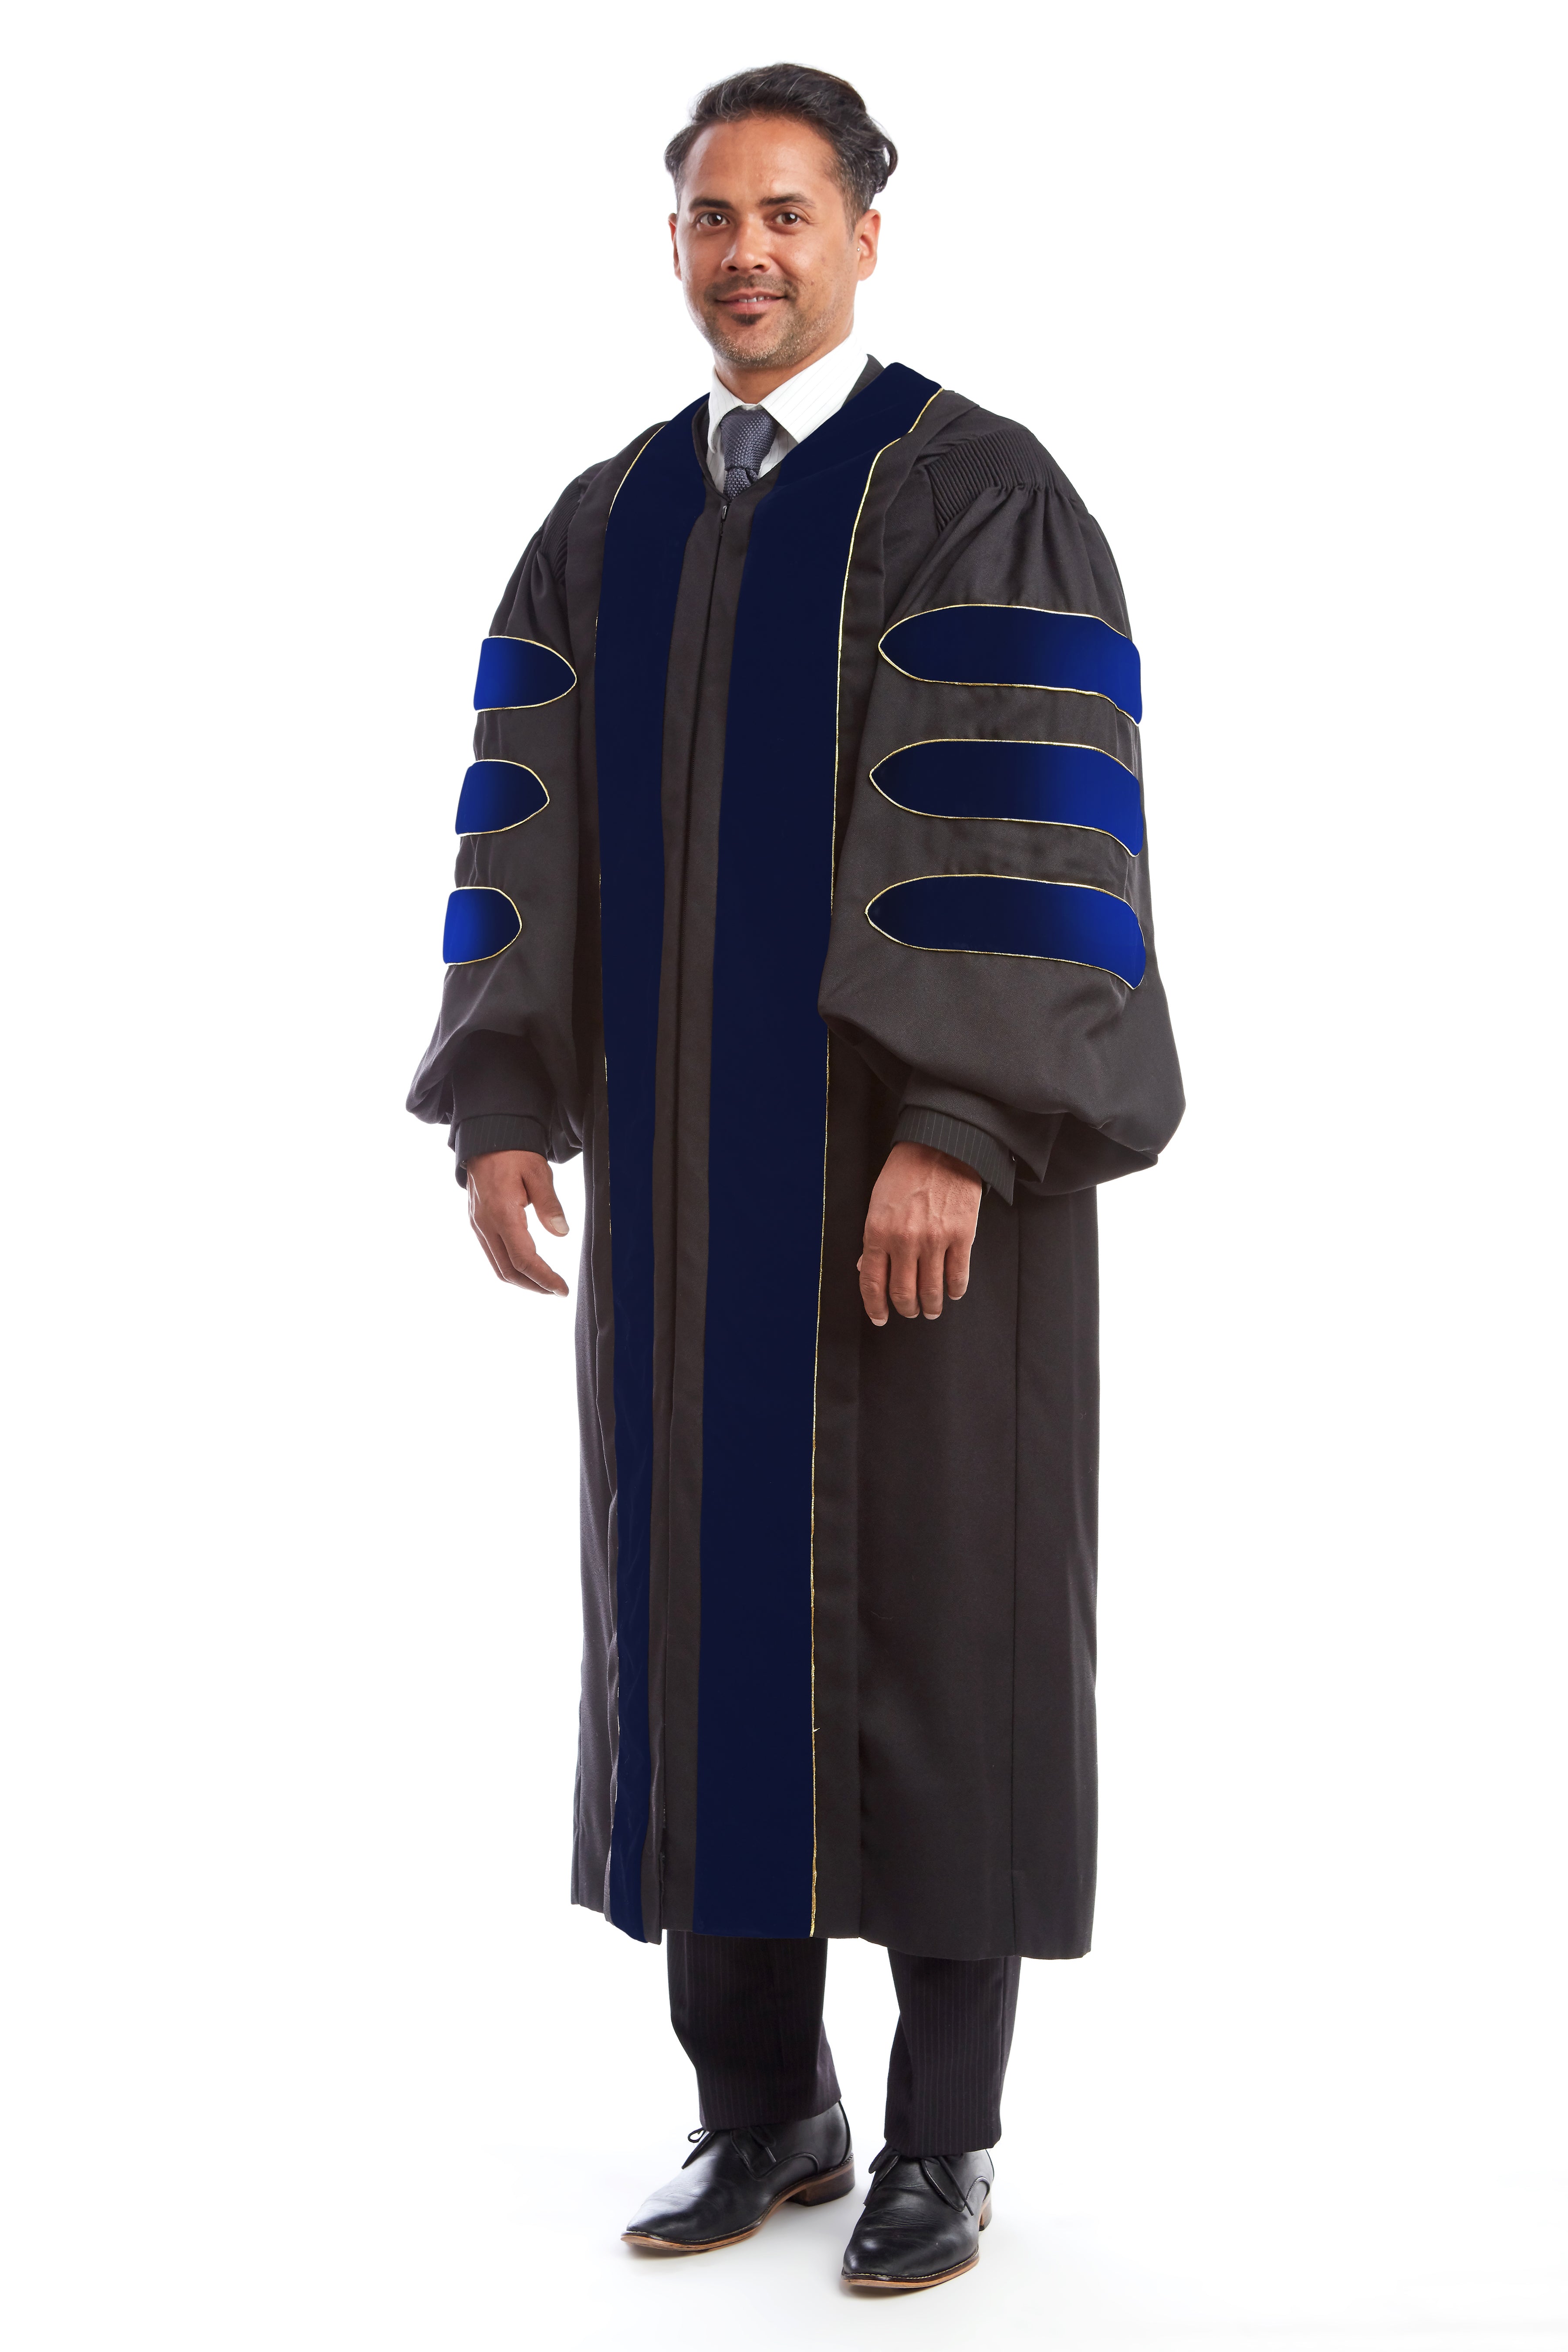 Premium PhD Gown